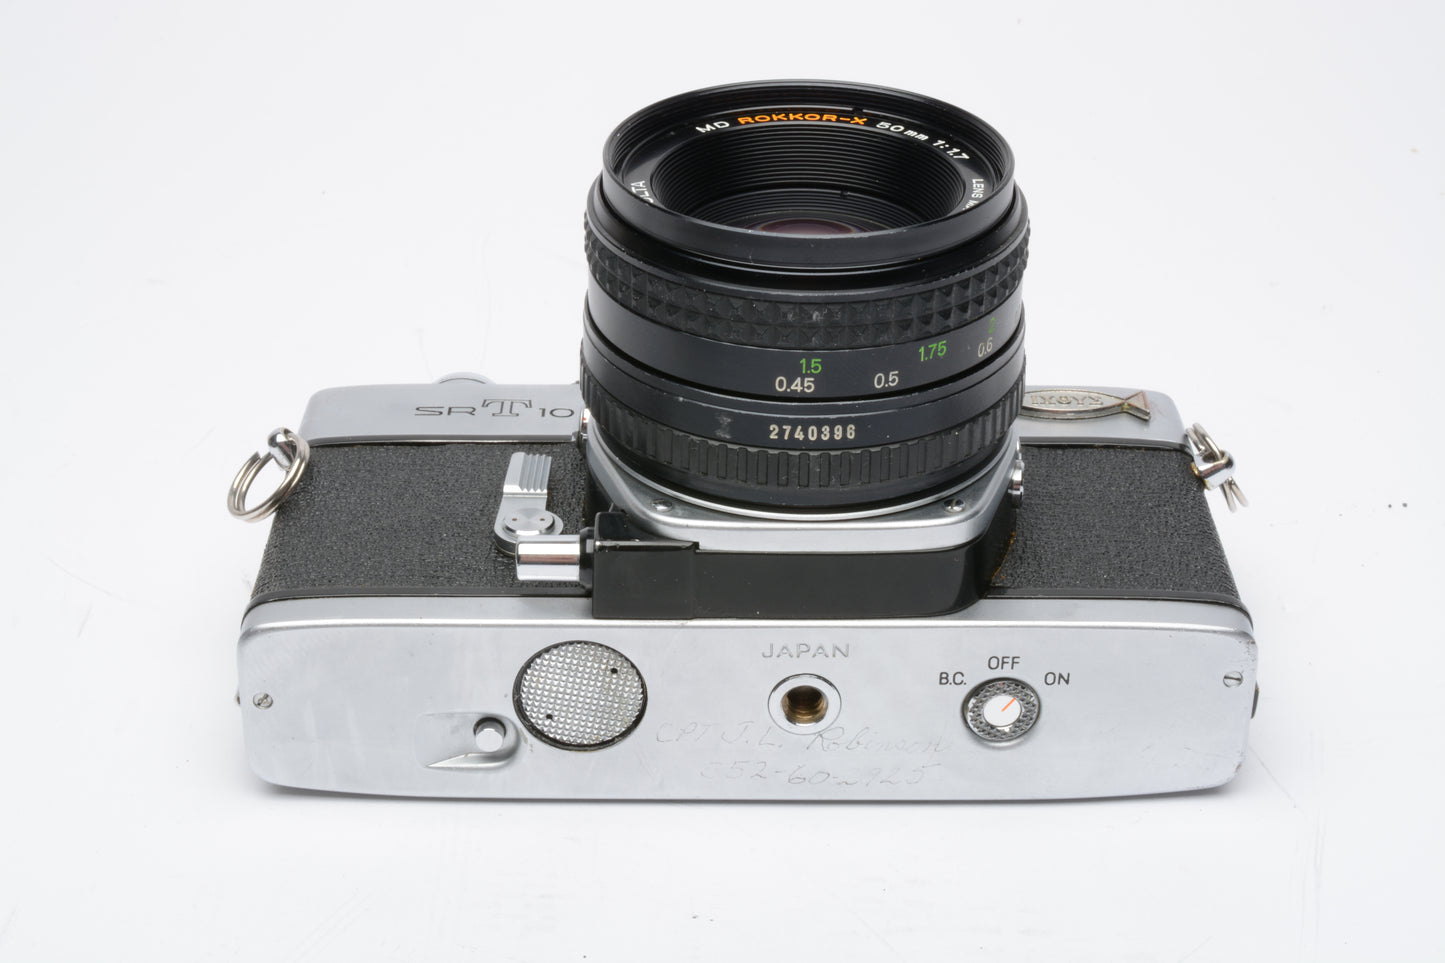 Minolta SRT-101 35mm SLR w/Rokkor-X 50mm f1.7 Prime lens, new seals, case, tested